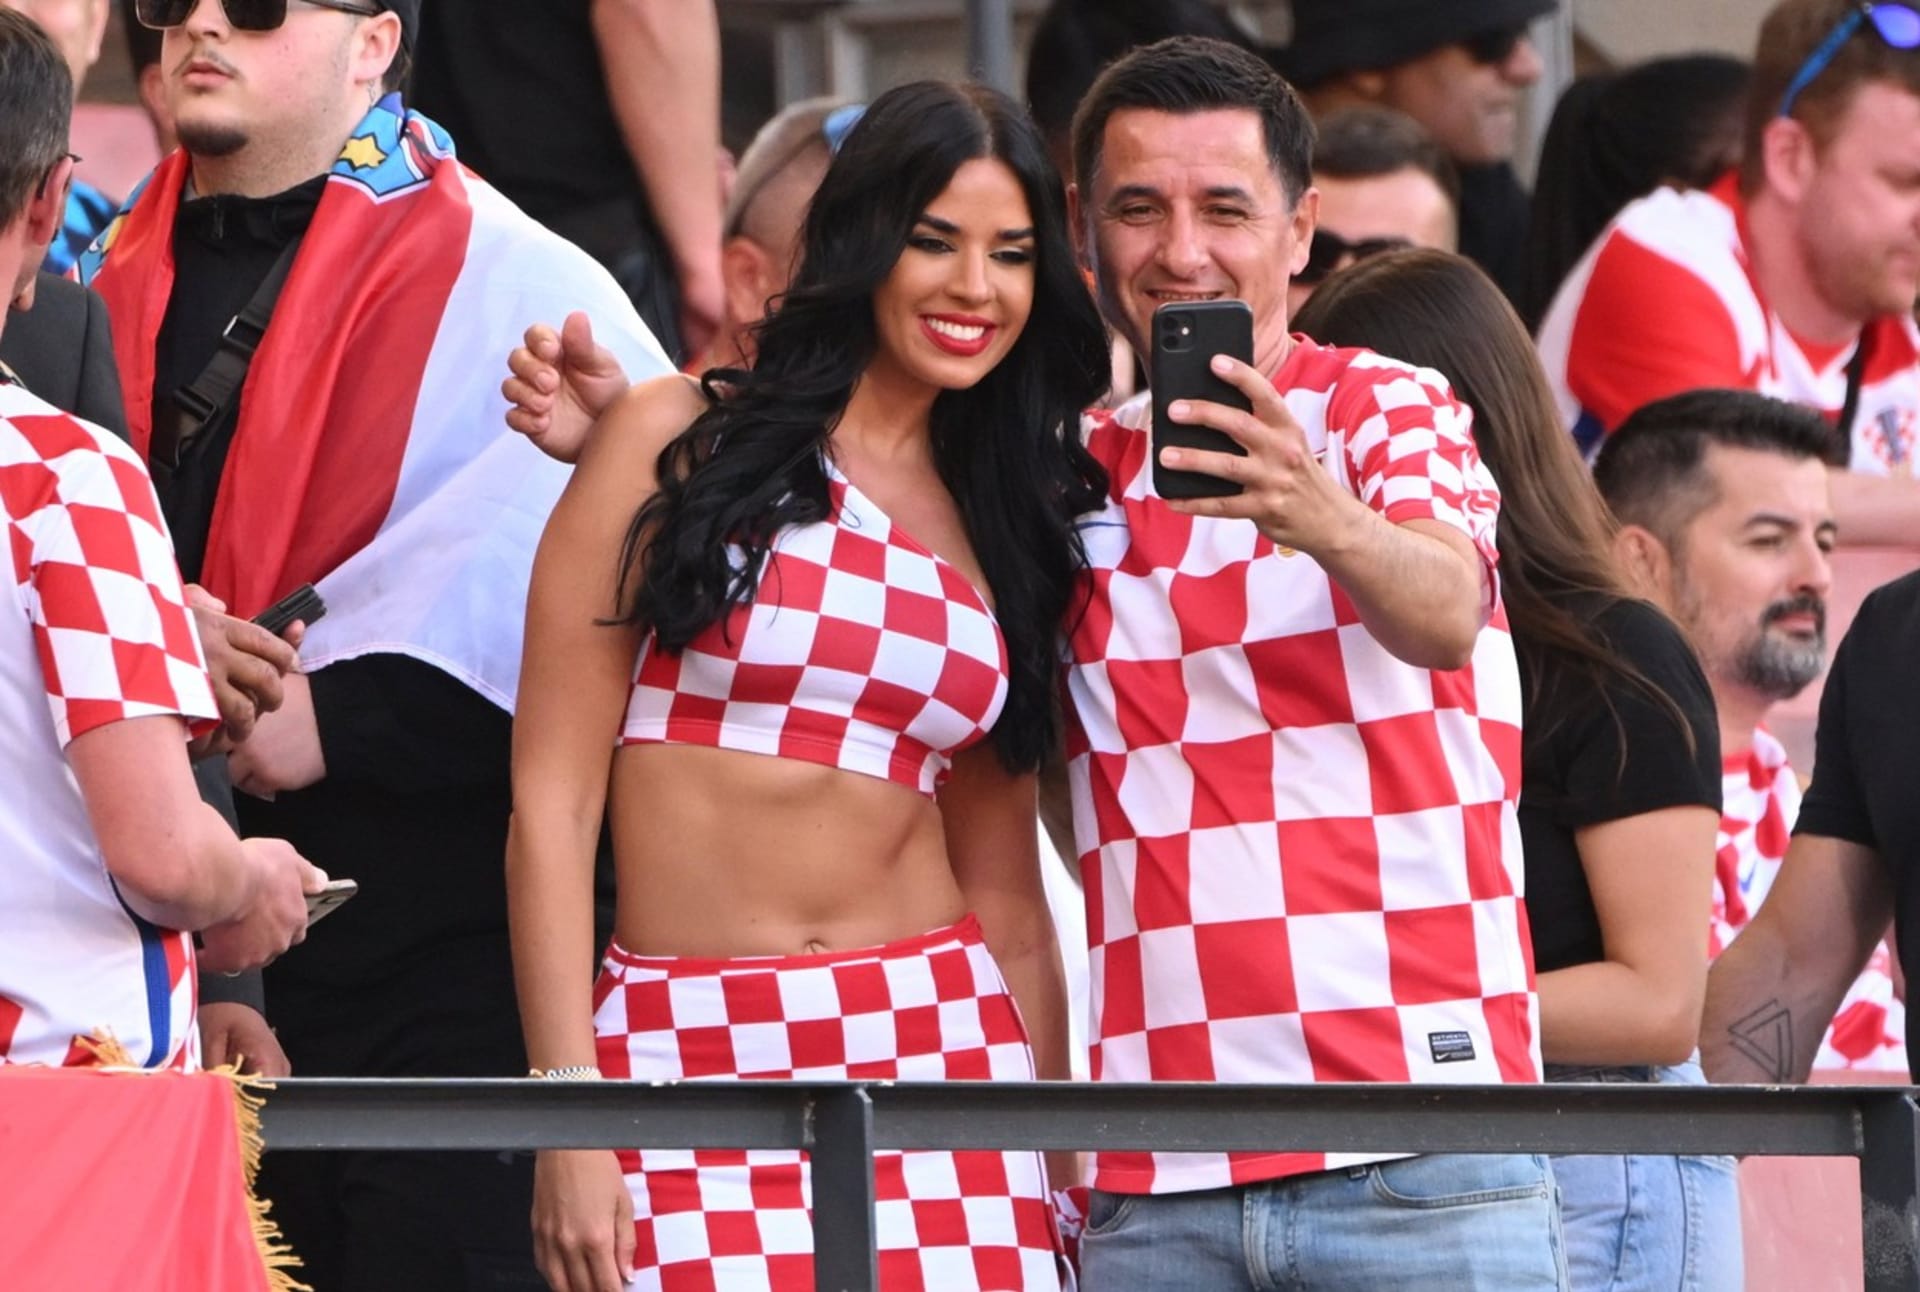 Na blížící se fotbalové Euro se těší statisíce fanoušků. Do Německa by měla dorazit i modelka Ivana Knöllová, která je skalní fanynkou chorvatské reprezentace. O pozdvižení se postarala již na šampionátu v Kataru svými odvážnými outfity.